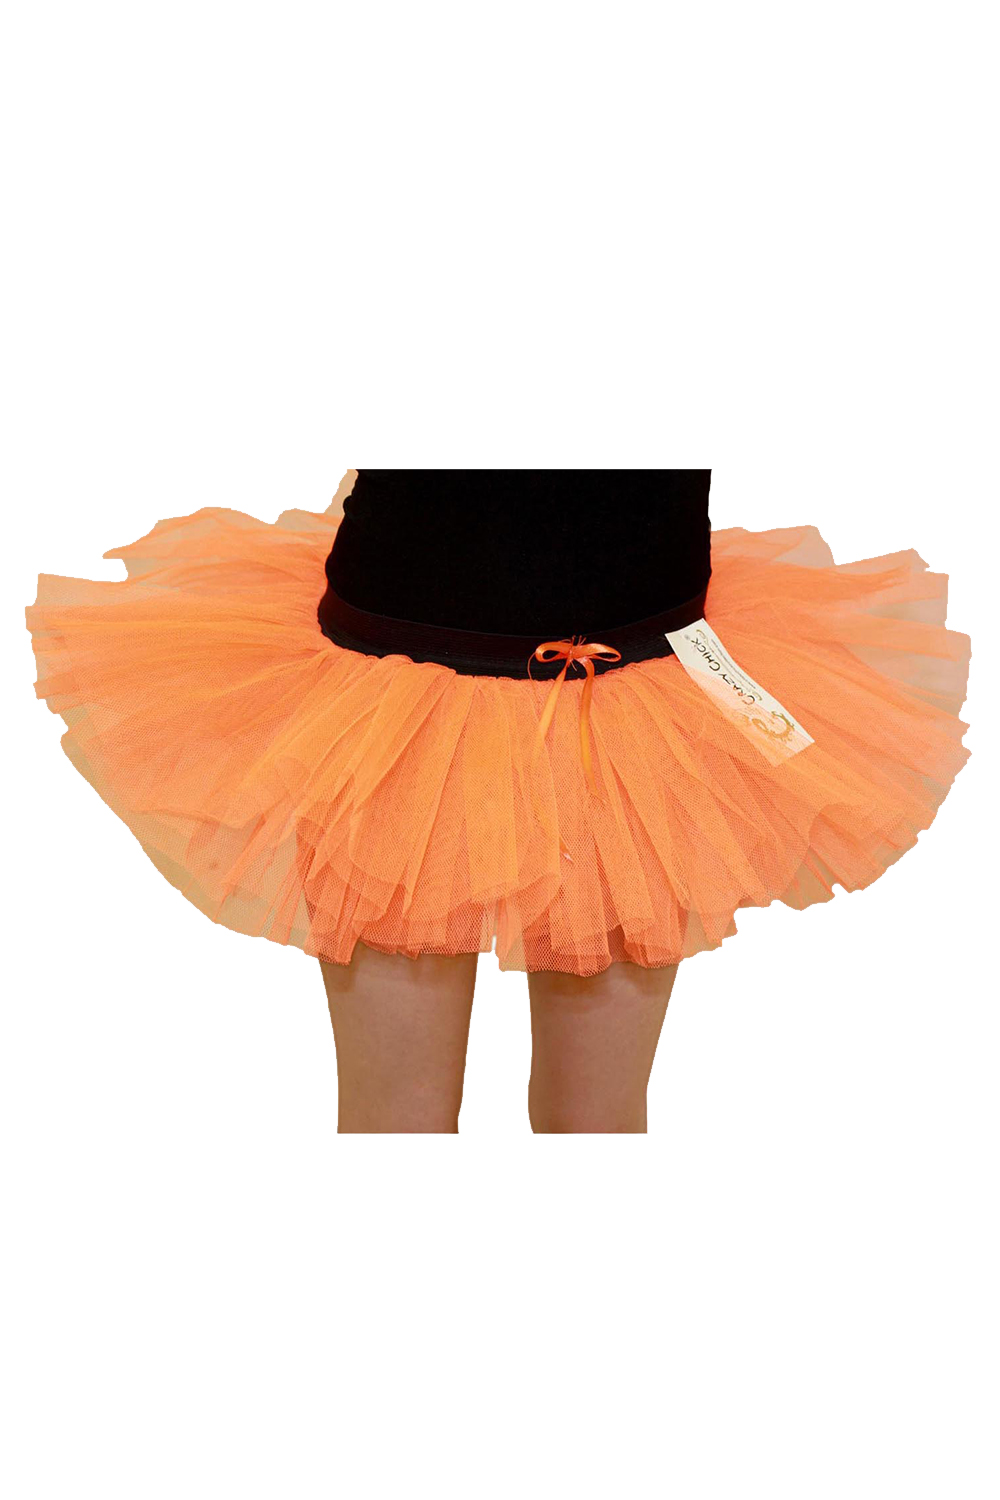 Crazy Chick Girls 3 Layers Orange Tutu Skirt